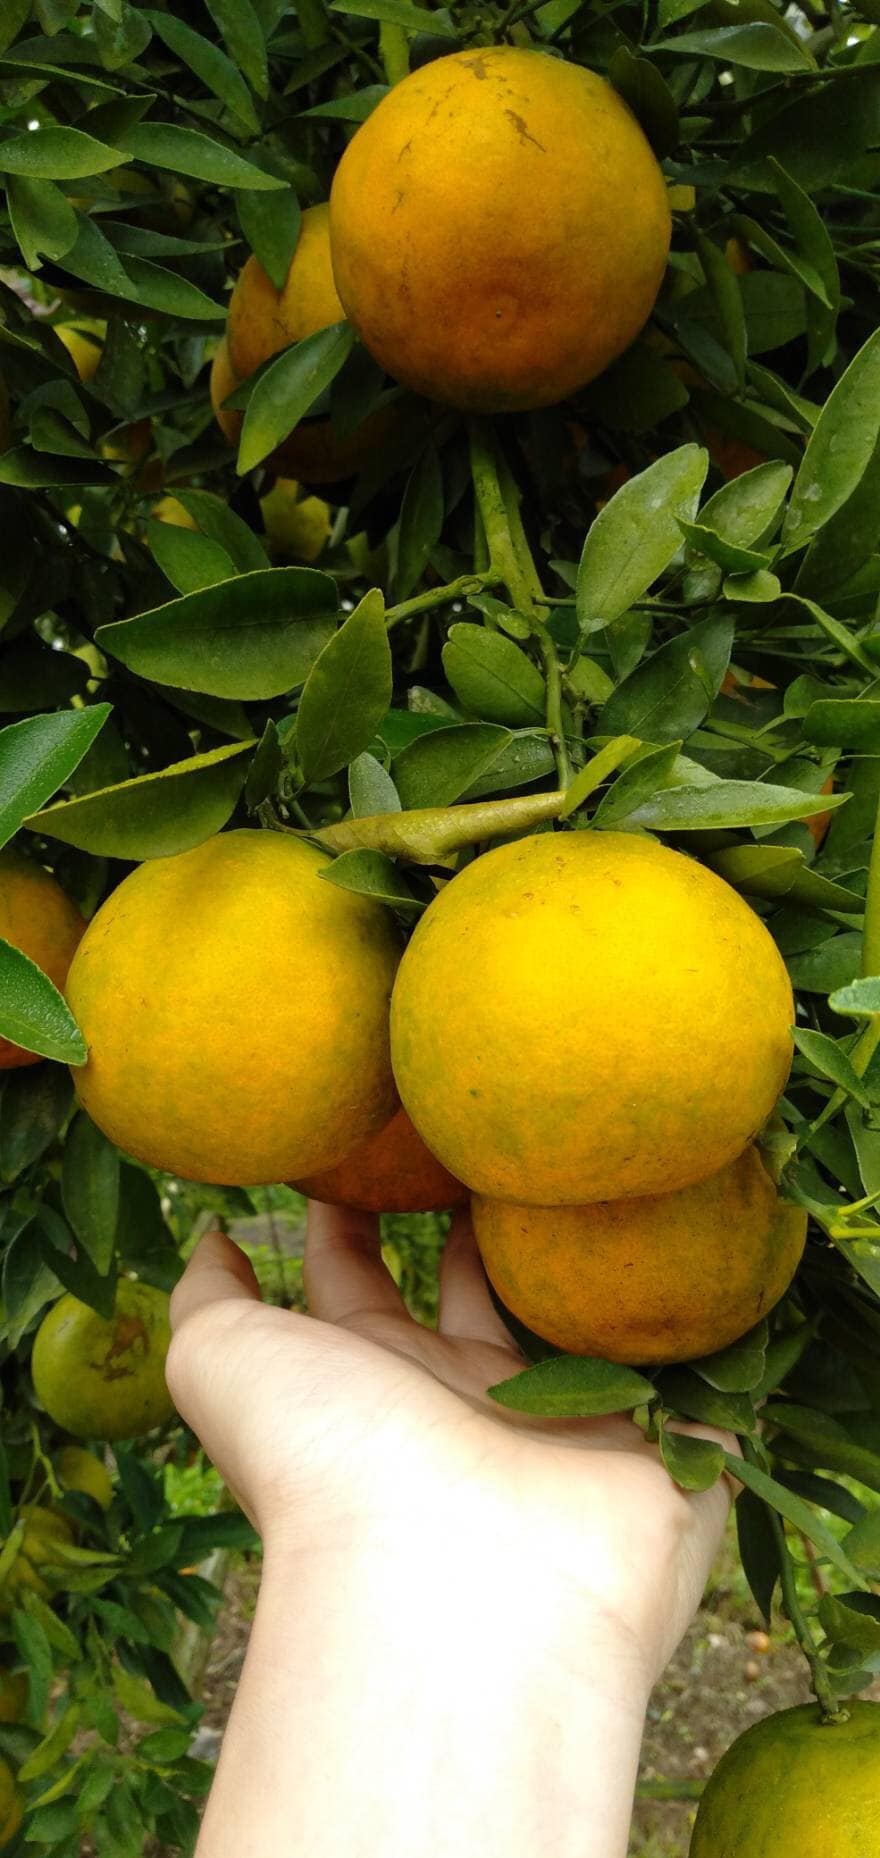 ส้มสายน้ำผึ้ง คัดพิเศษ สดจากไร่ หวานฉ่ำ ไร้สารแวก ไม่ทำให้รสชาติเปลี่ยน รับประกันความสดใหม่ กล่อง 5 กิโล Size เบอร์ 4